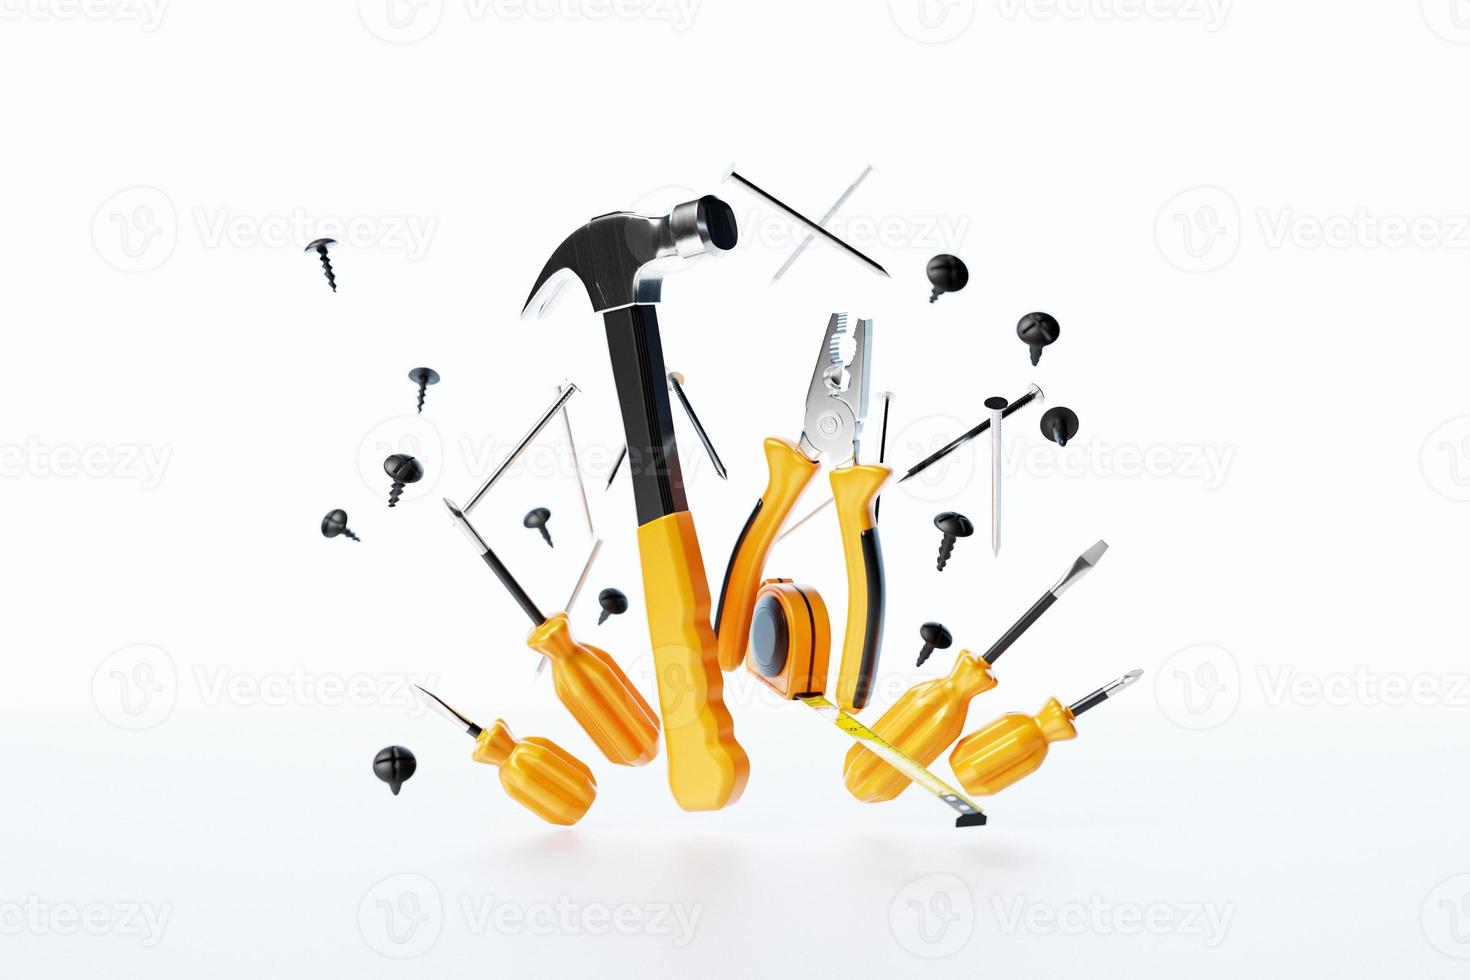 illustrazione 3d cacciavite, martello, pinze, viti, ecc. per lavori a mano. vari strumenti di lavoro. concetto di costruzione, costruzione, ristrutturazione. foto